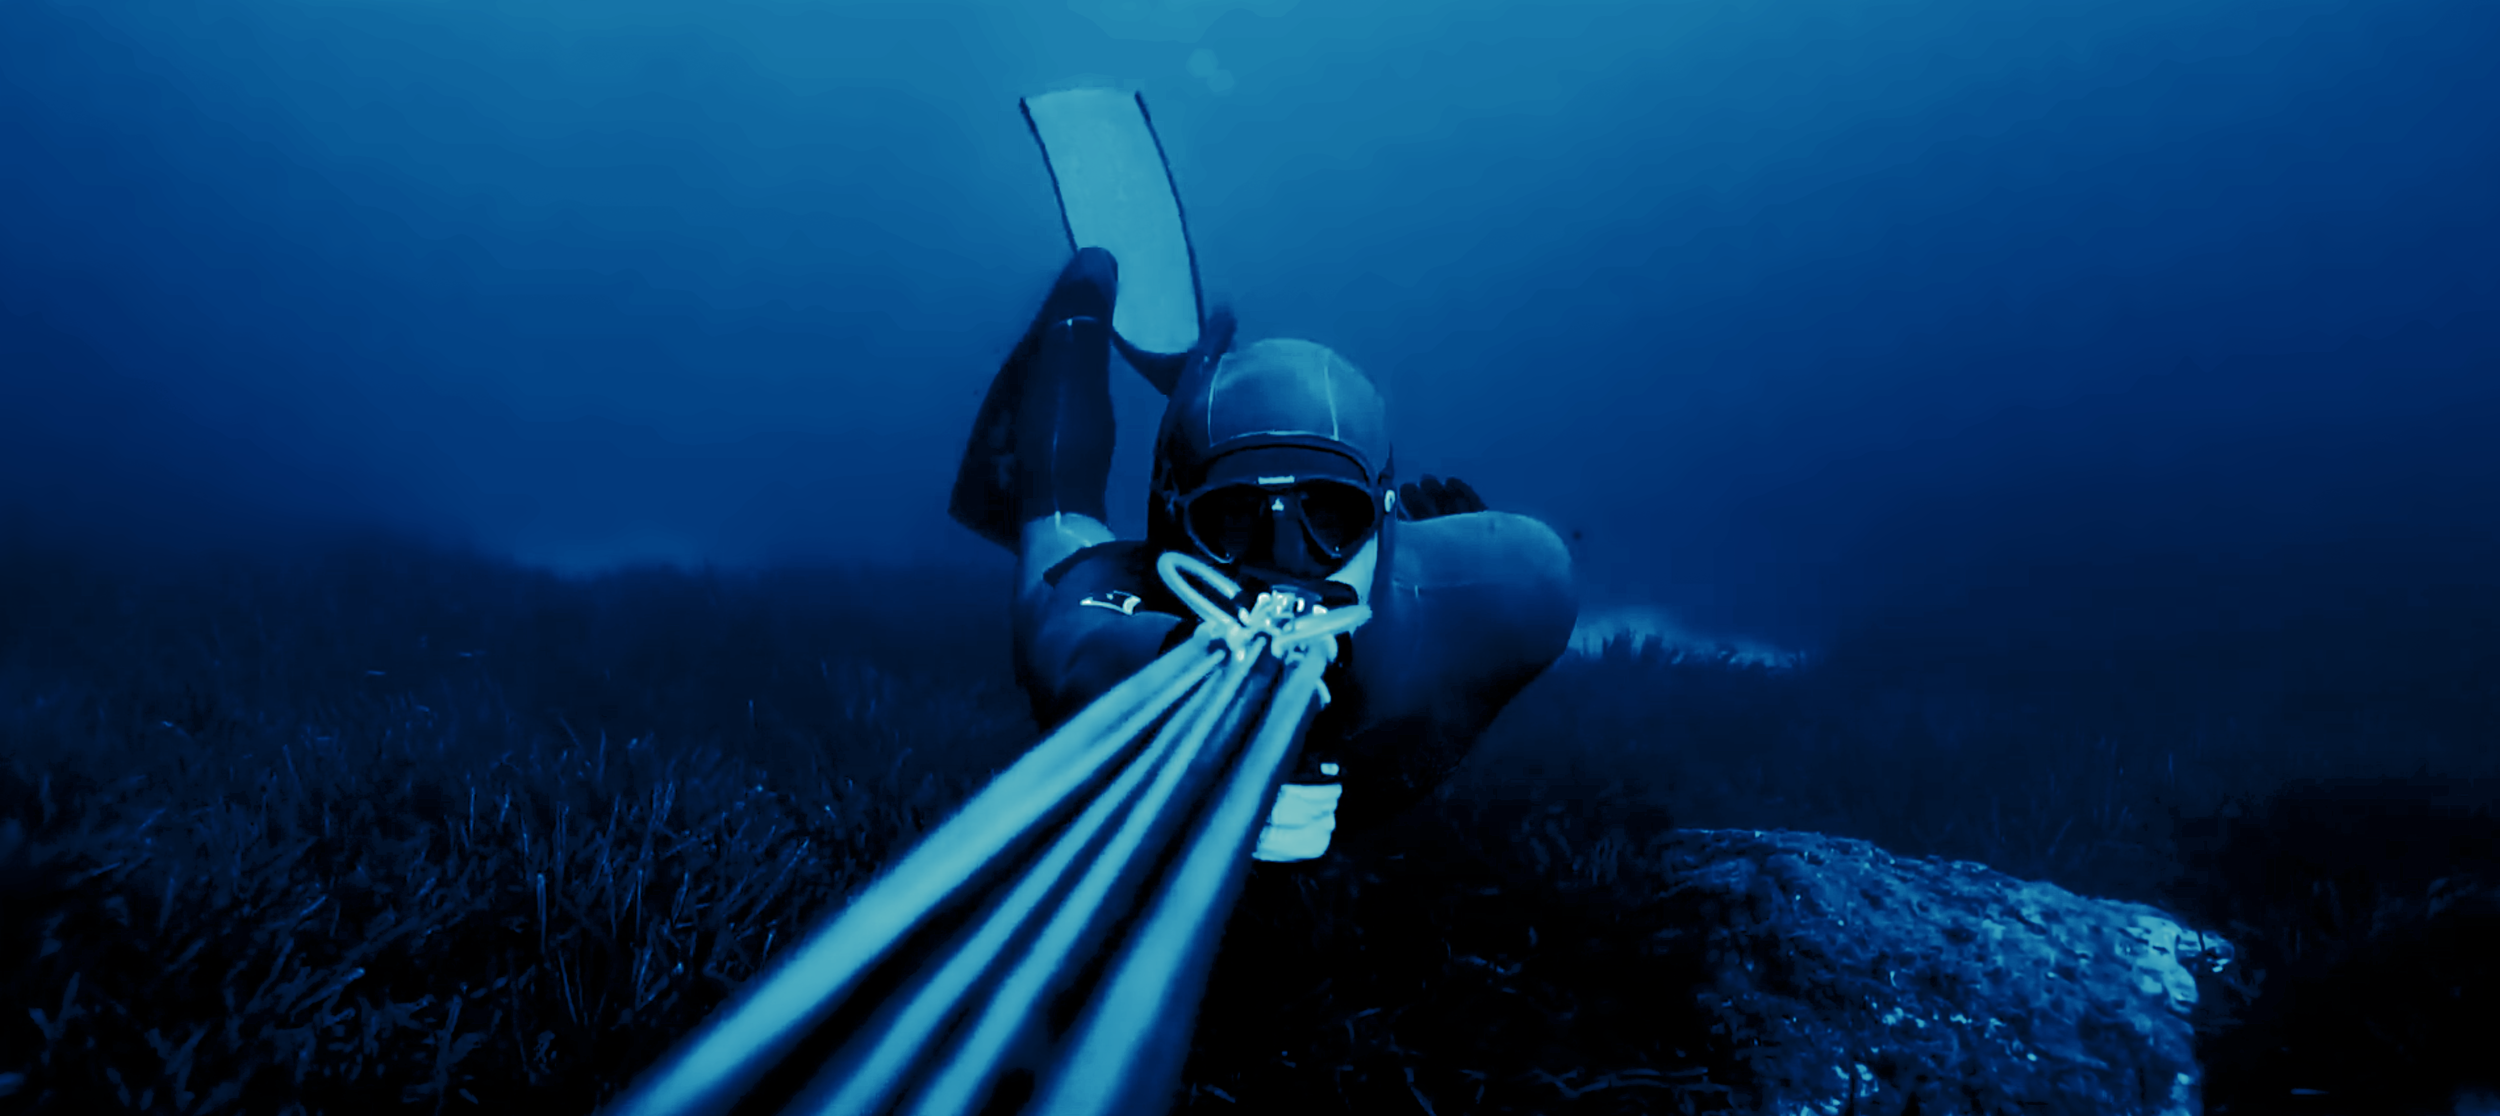 Les techniques de chasse sous-marine